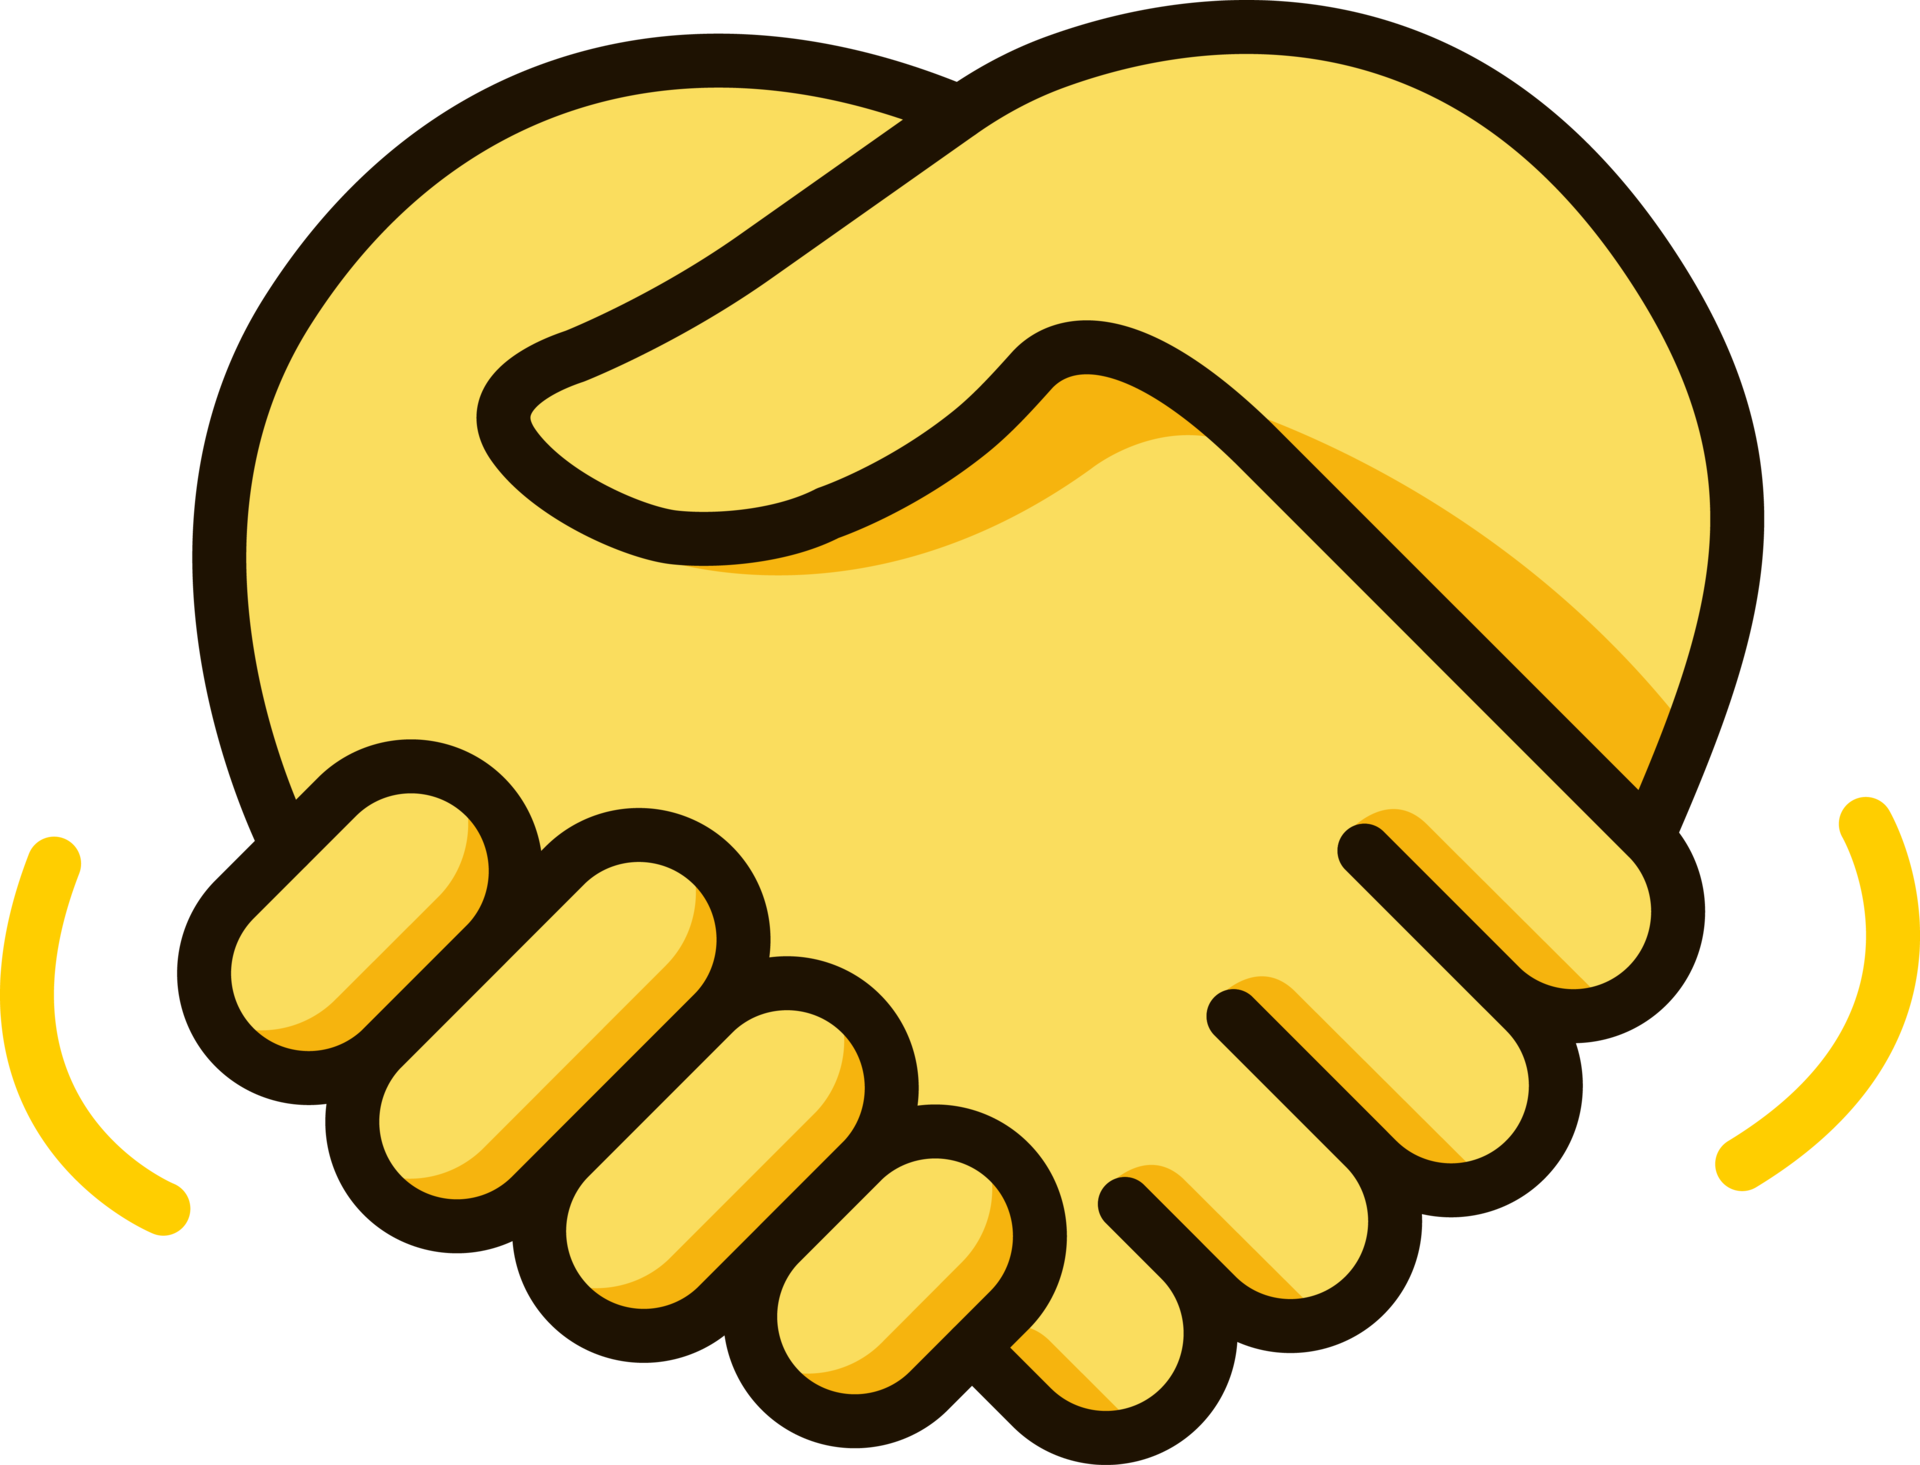 handshake icon emoji sticker 29200529 PNG